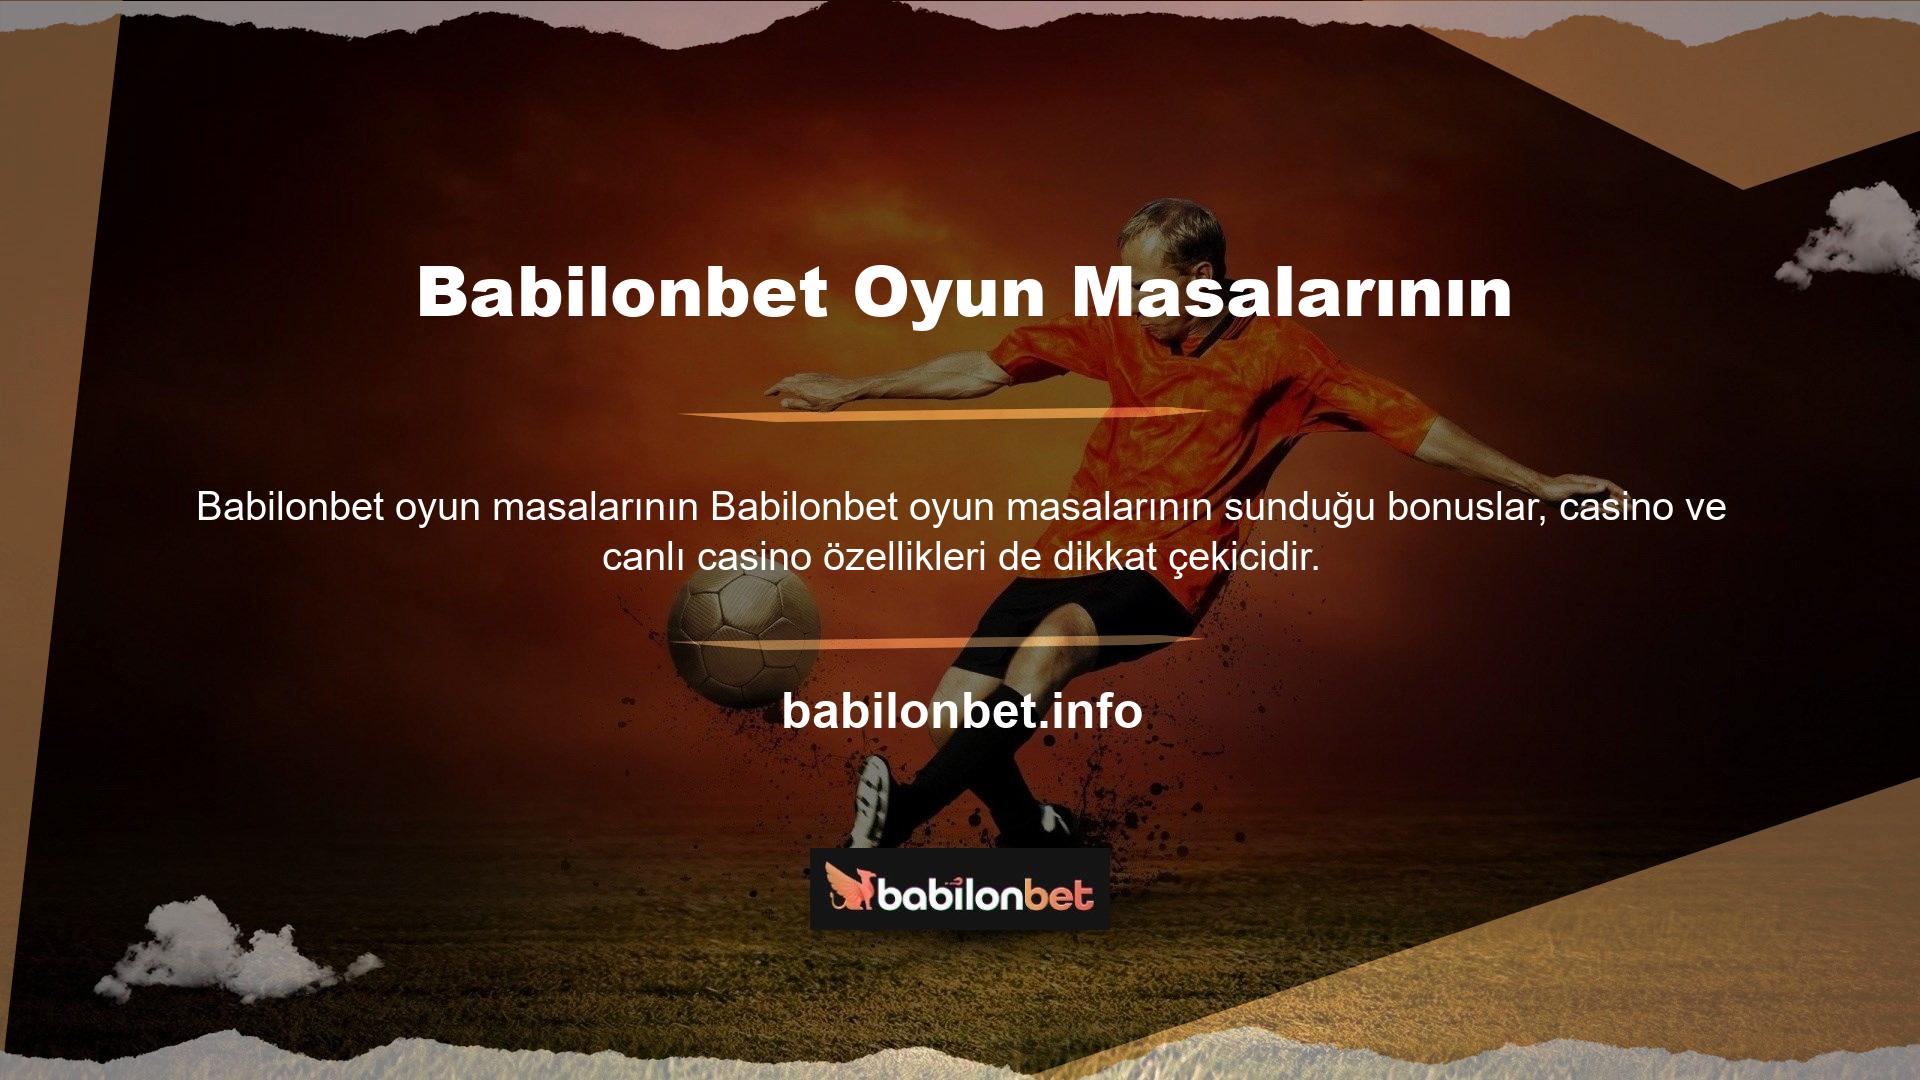 Babilonbet poker sitesi Türkiye’nin ilk poker sitesi olup yeni üyelere hoş geldin bonusu sağlamaktadır